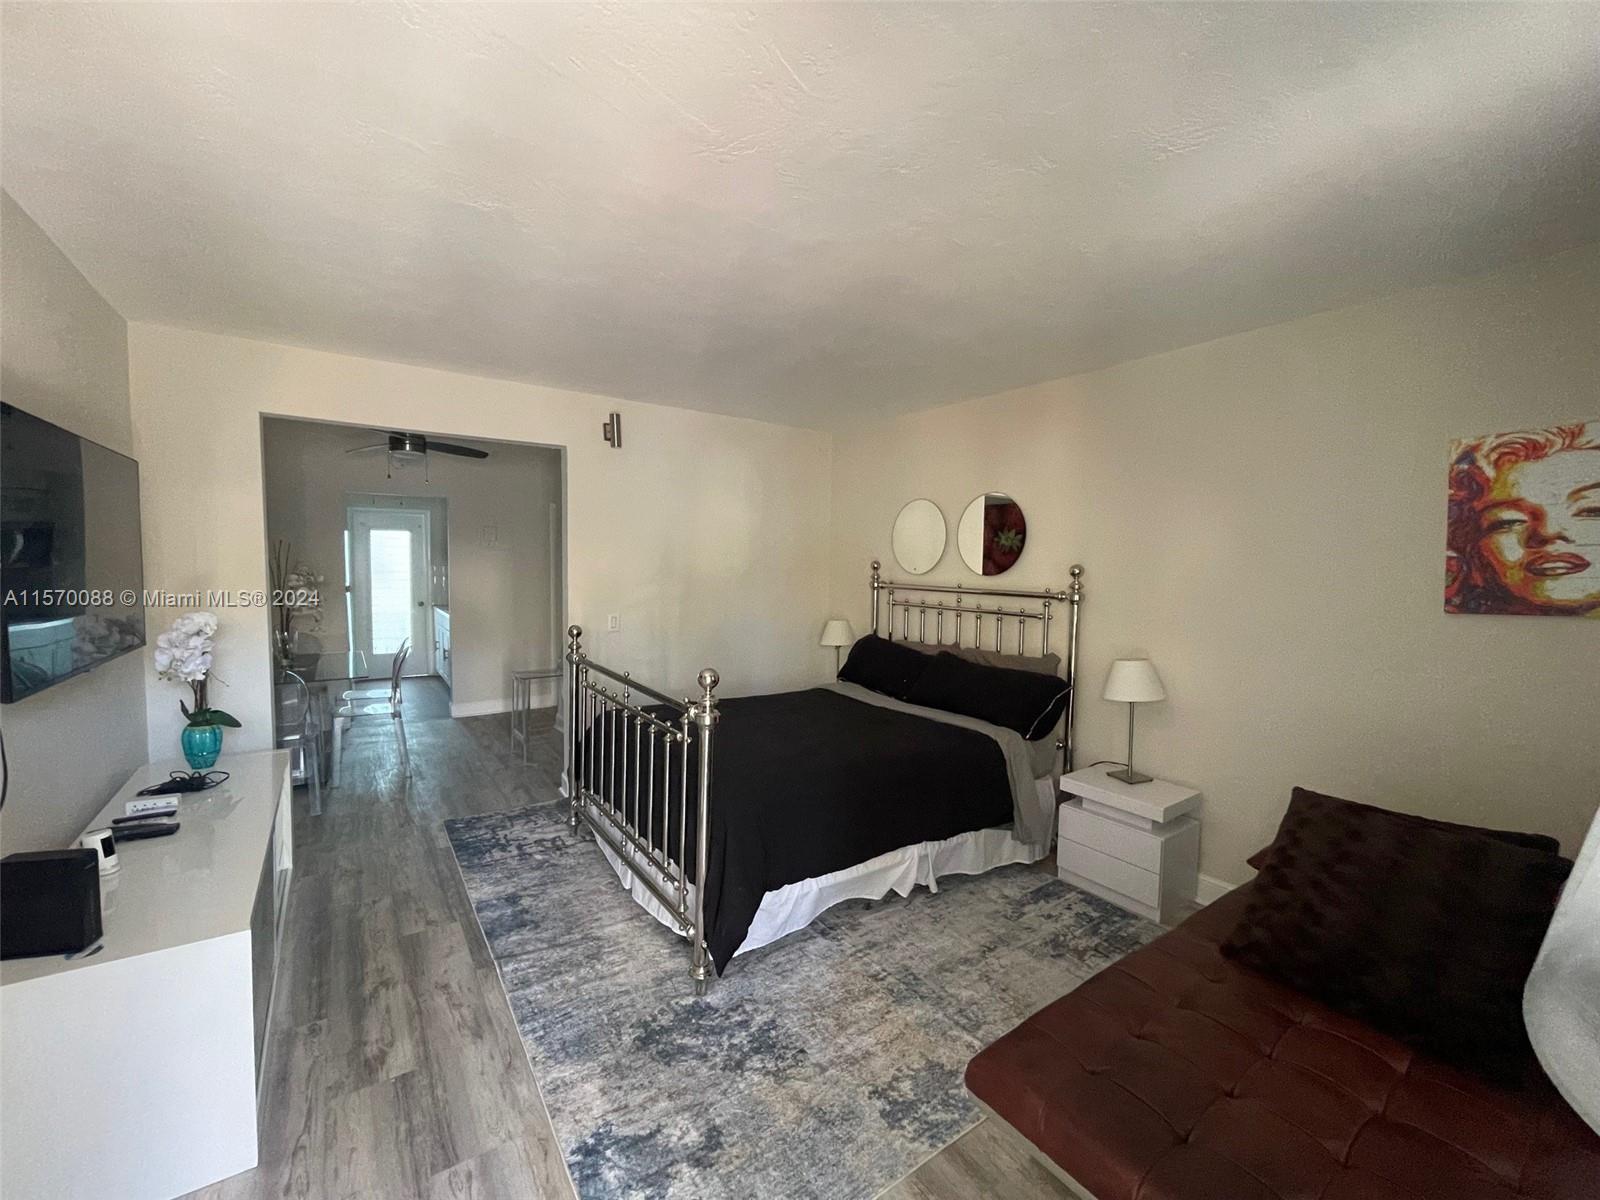 Rental Property at 761 Euclid Ave 10, Miami Beach, Miami-Dade County, Florida - Bedrooms: 1 
Bathrooms: 1  - $1,980 MO.